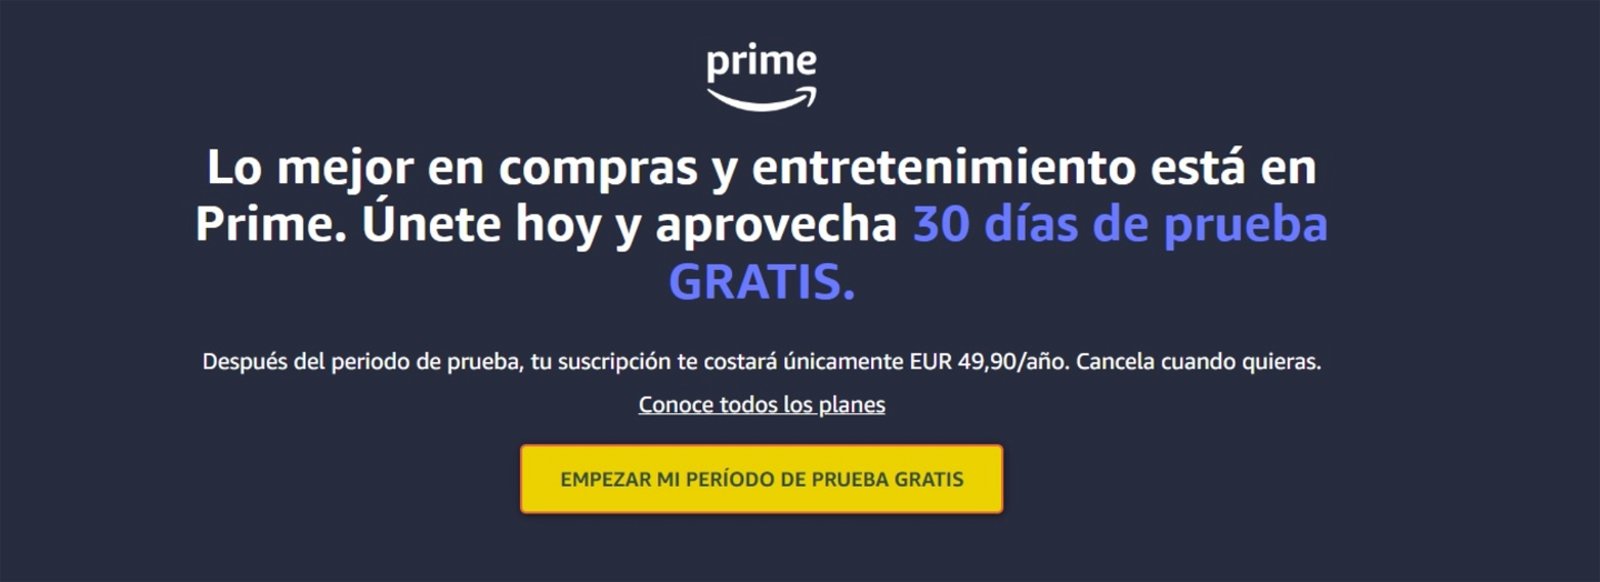 Amazon Prime empezar